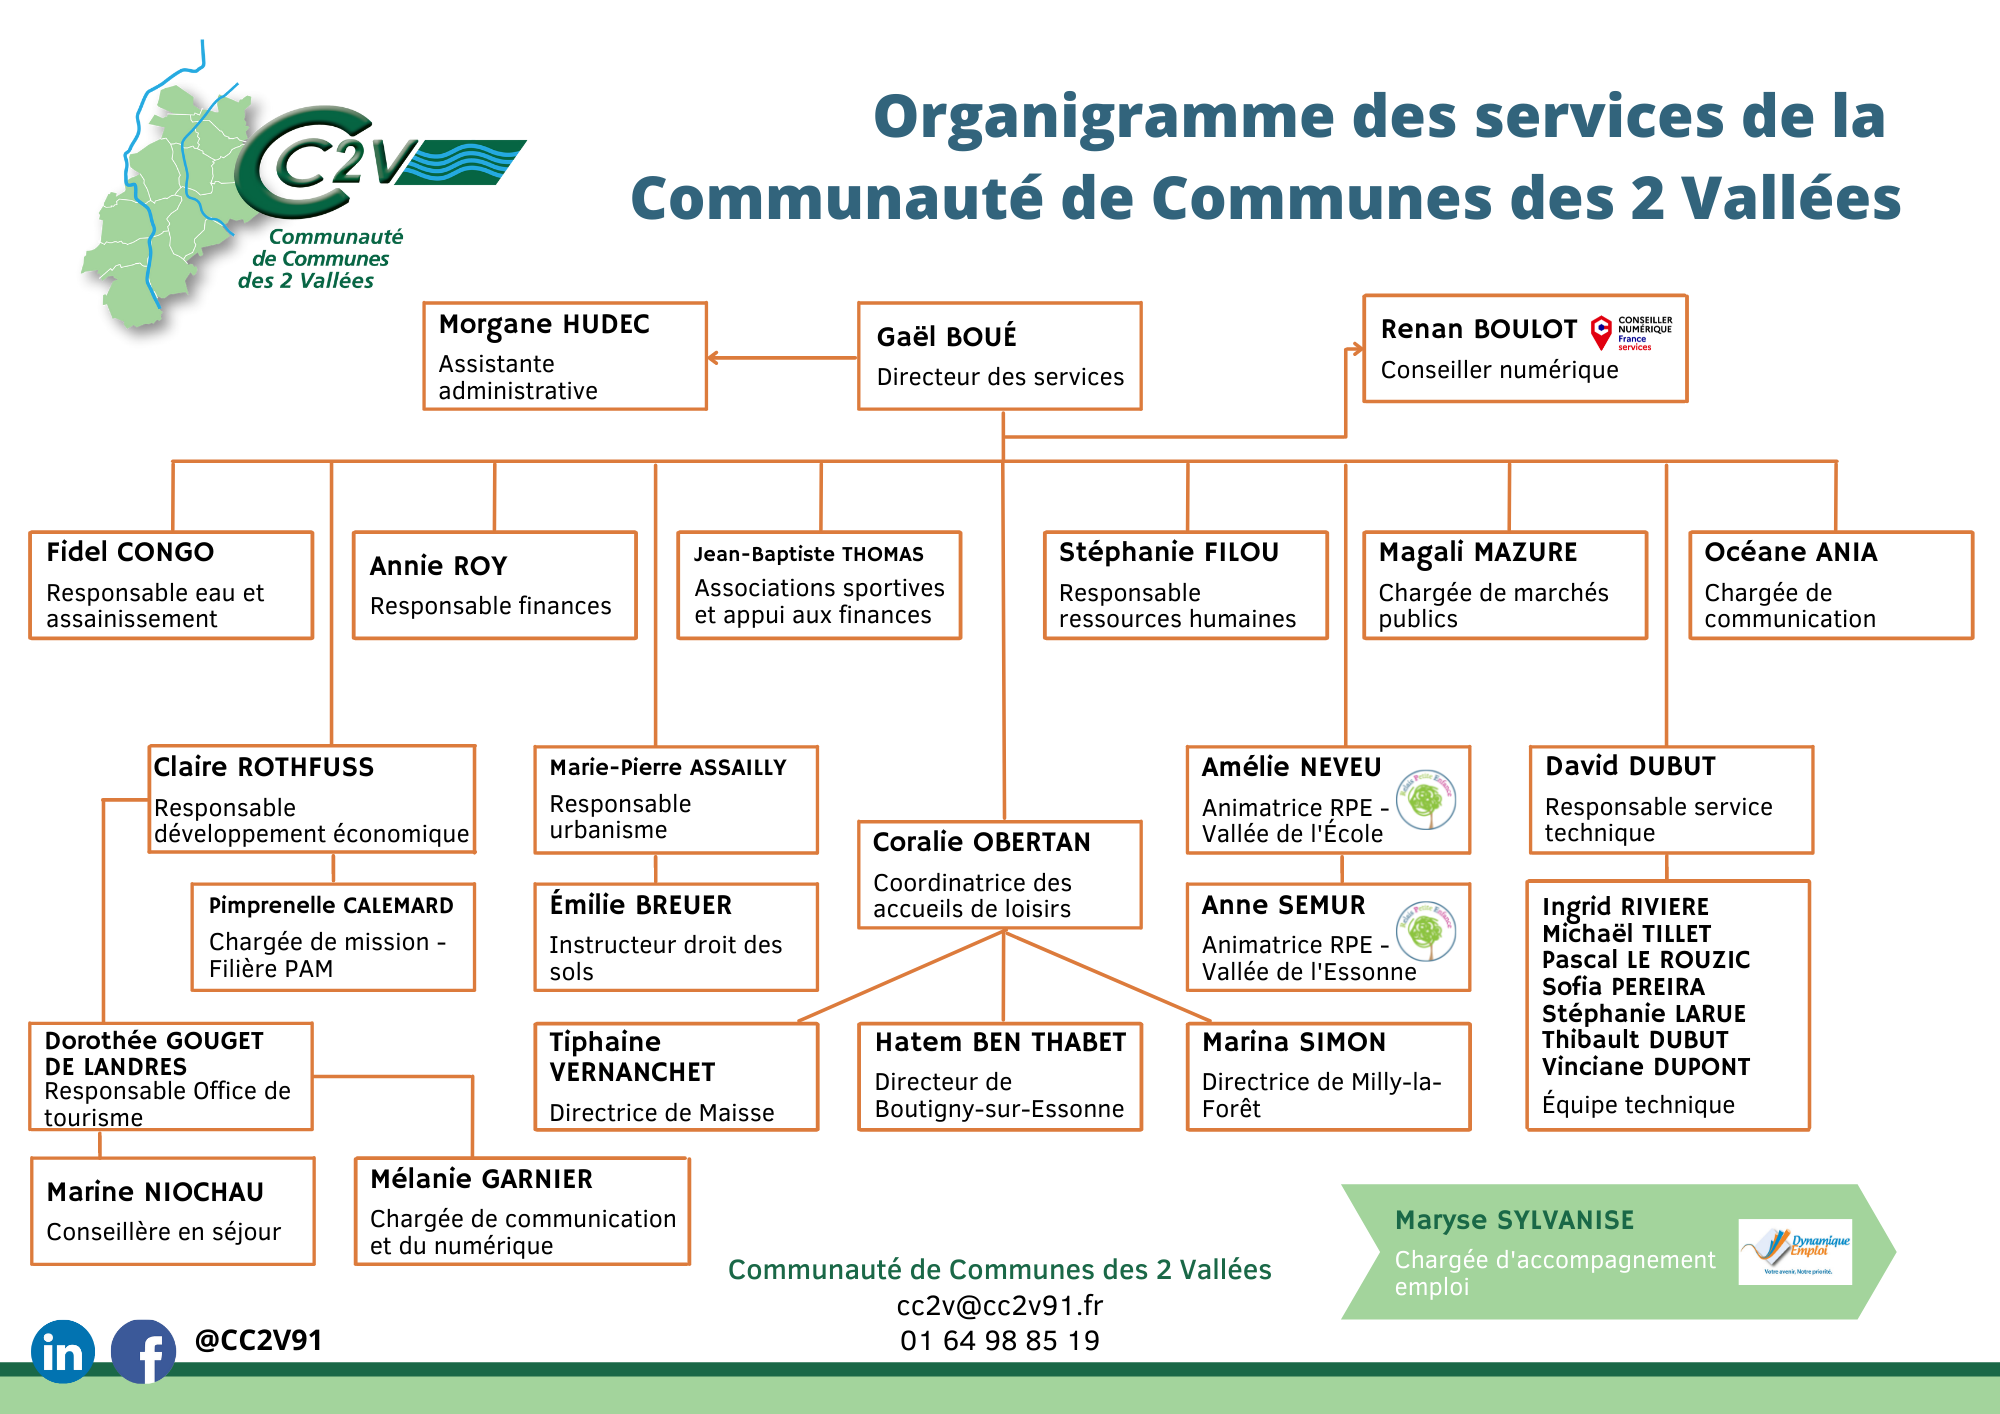 Organigramme des services de la Communauté de Communes des 2 Vallées  - Avril 2022.png